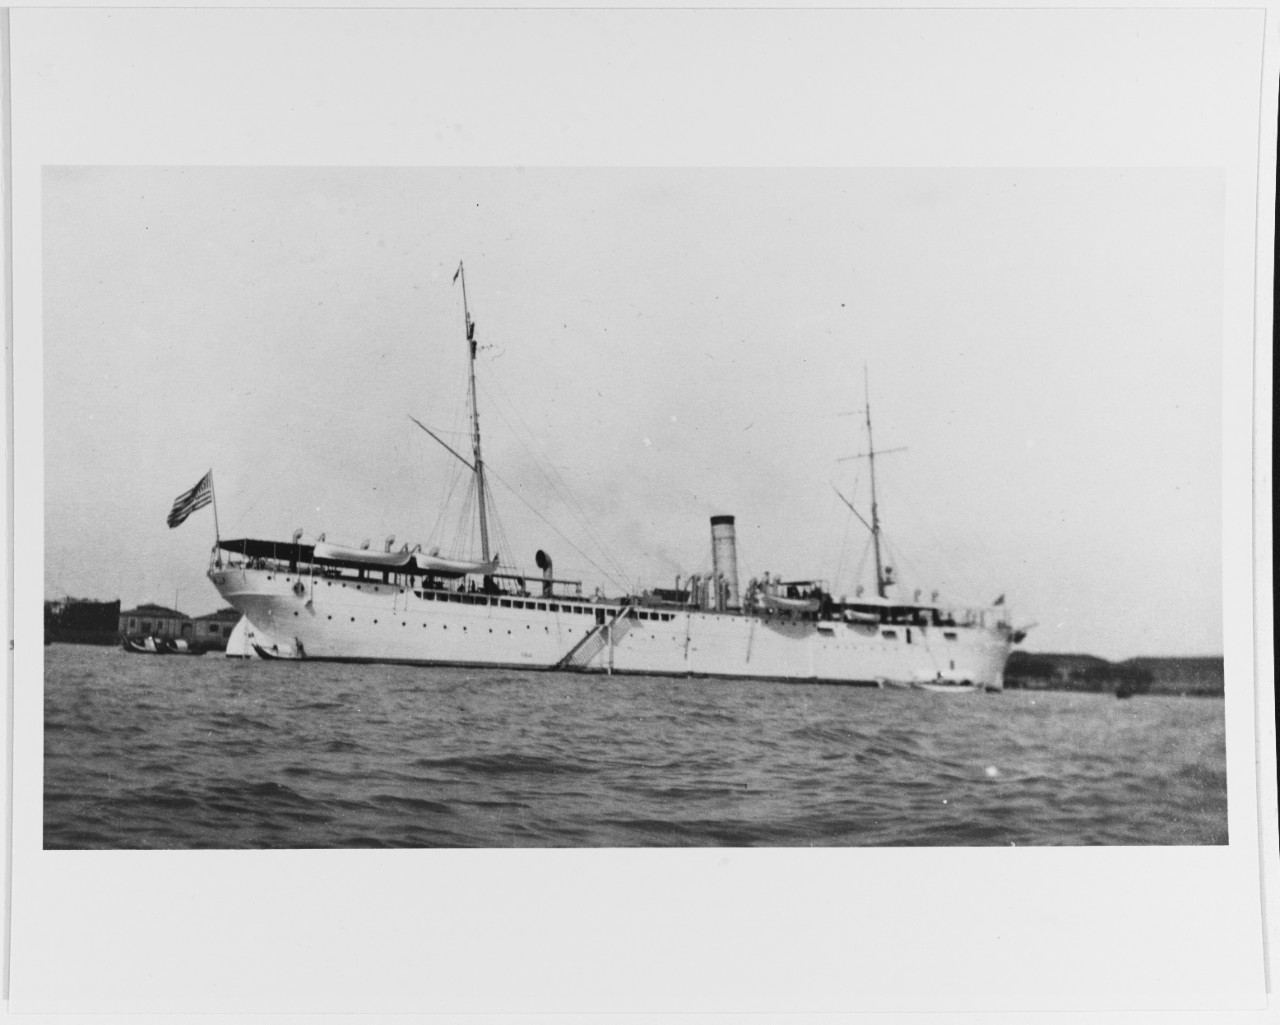 USS RAINBOW (AS-7)